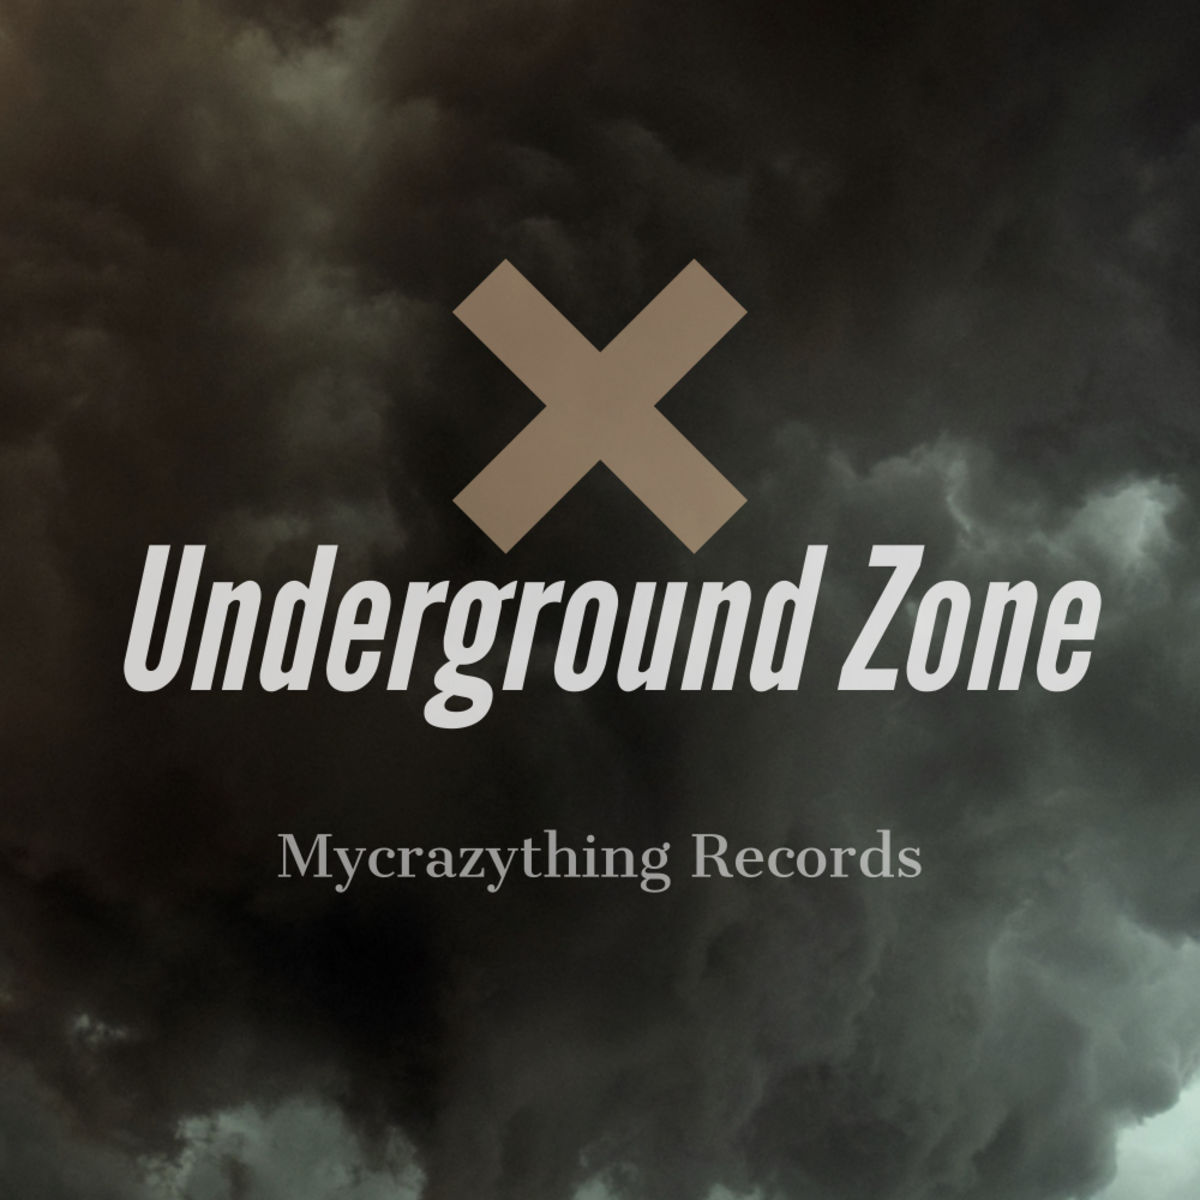 VA - Underground Zone / Mycrazything Records